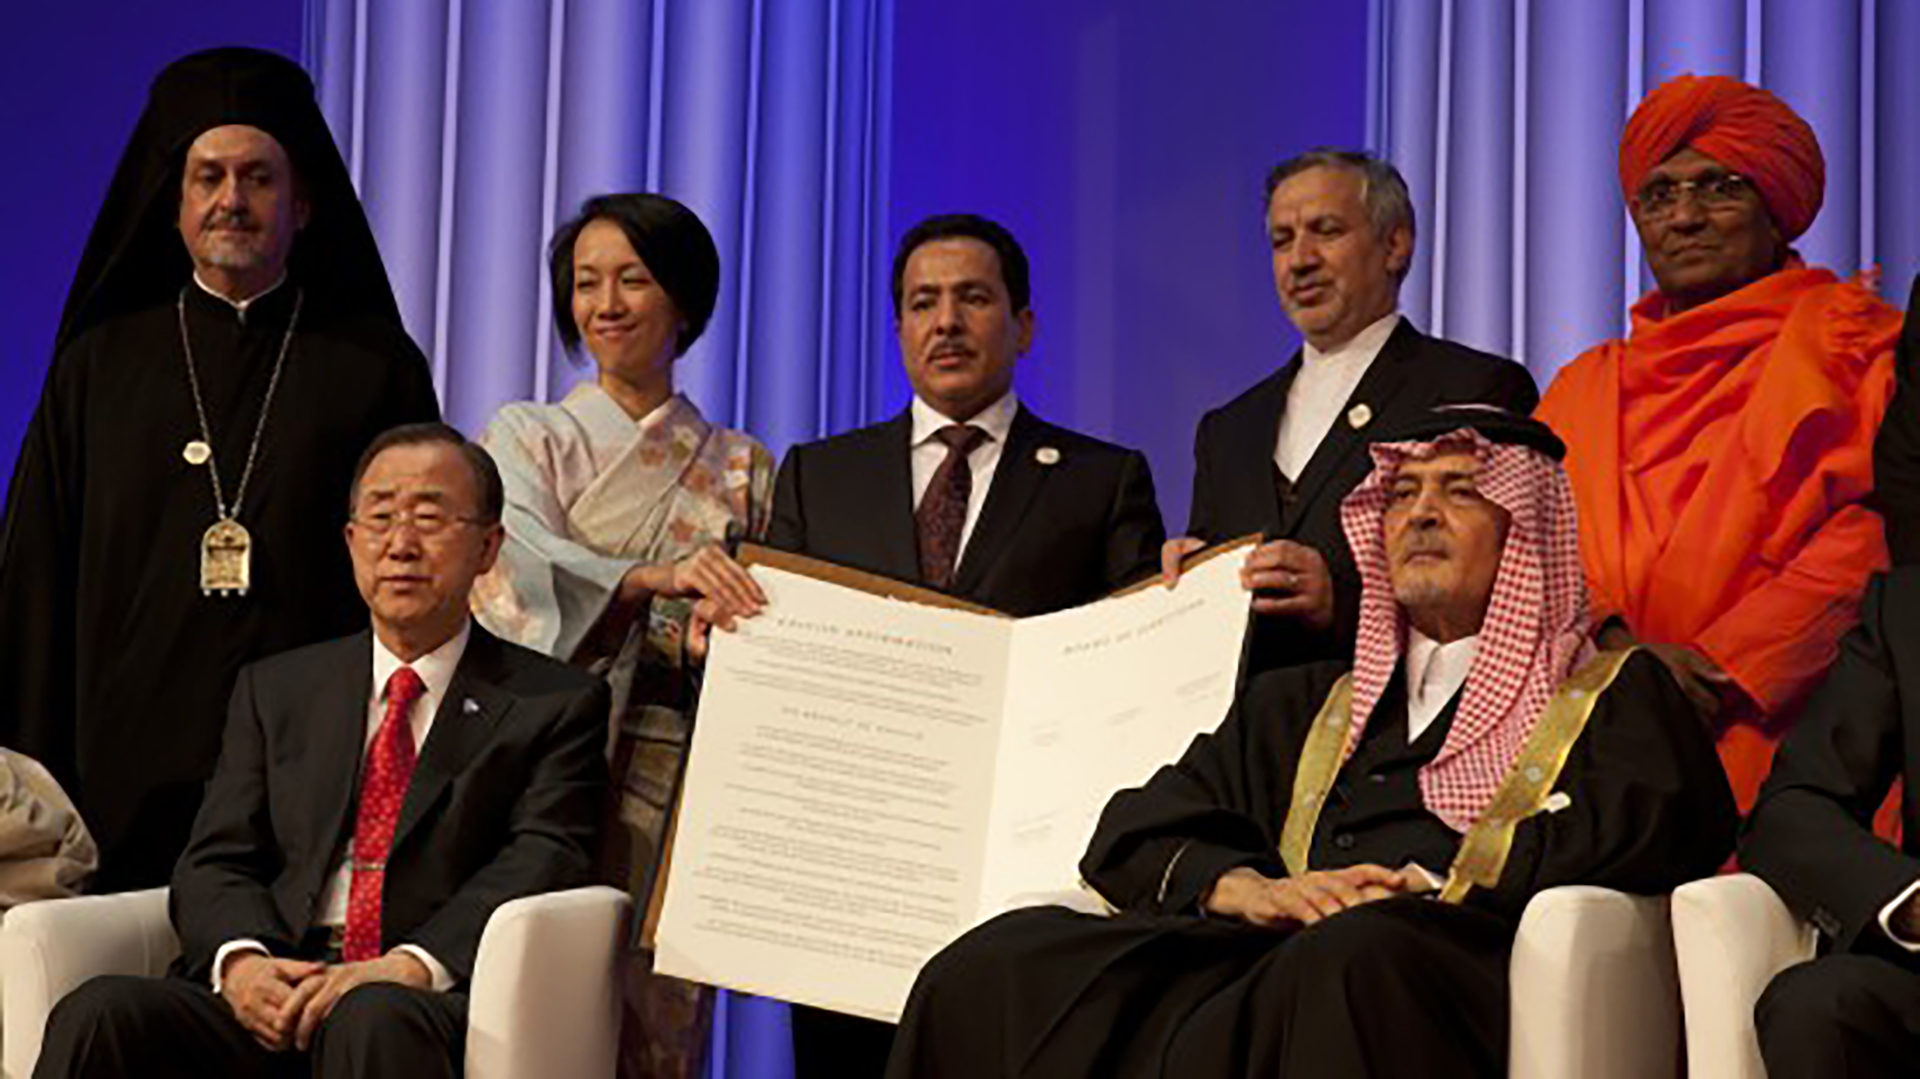 Le comité de direction du Centre international du Roi Abdallah ben Abdelaziz pour le dialogue interreligieux et interculturel (KAICIID), basé à Vienne